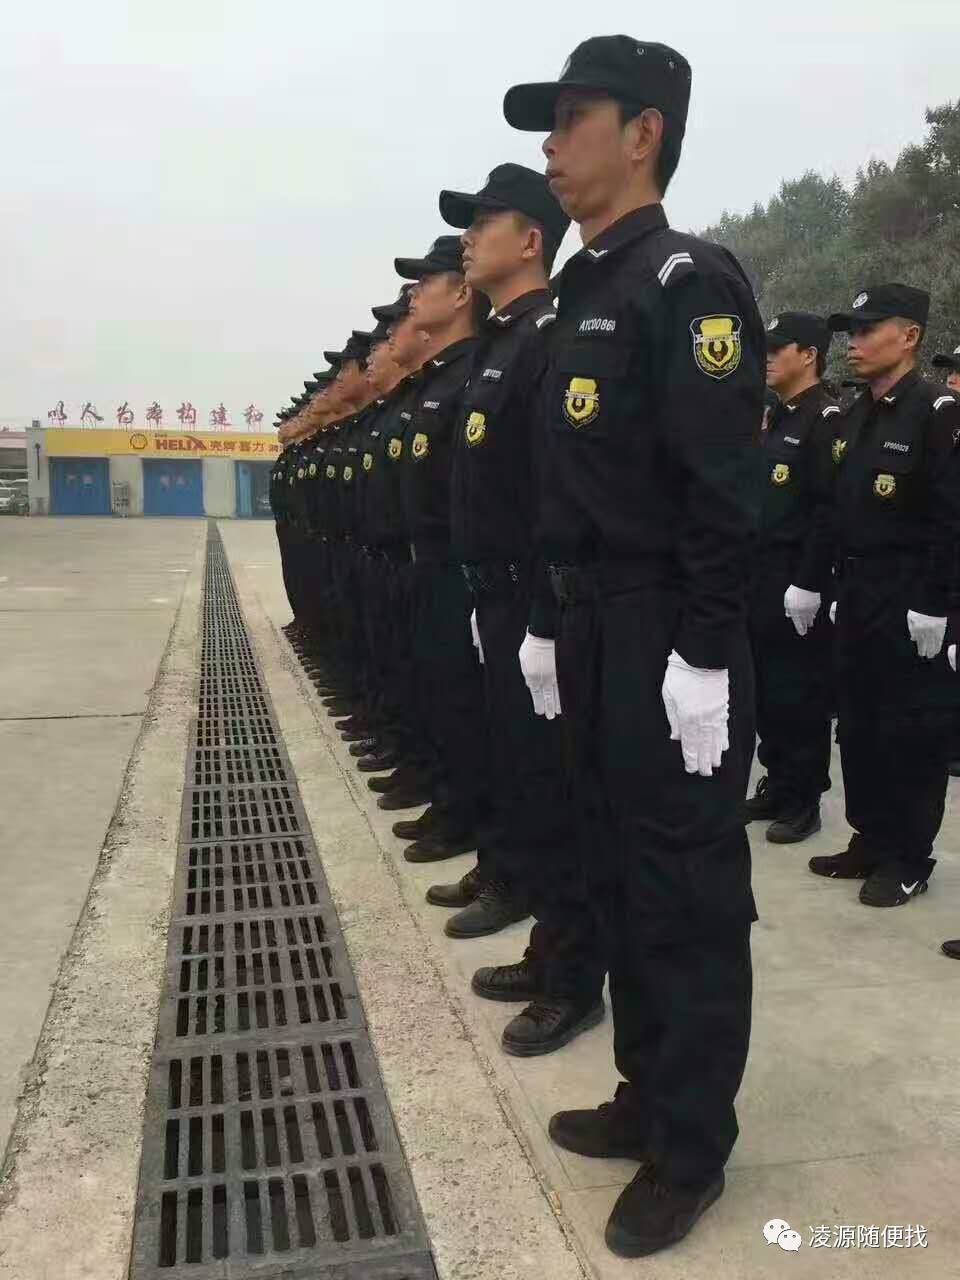 【招聘启事】强大伟业(北京)保安服务中心常年招聘